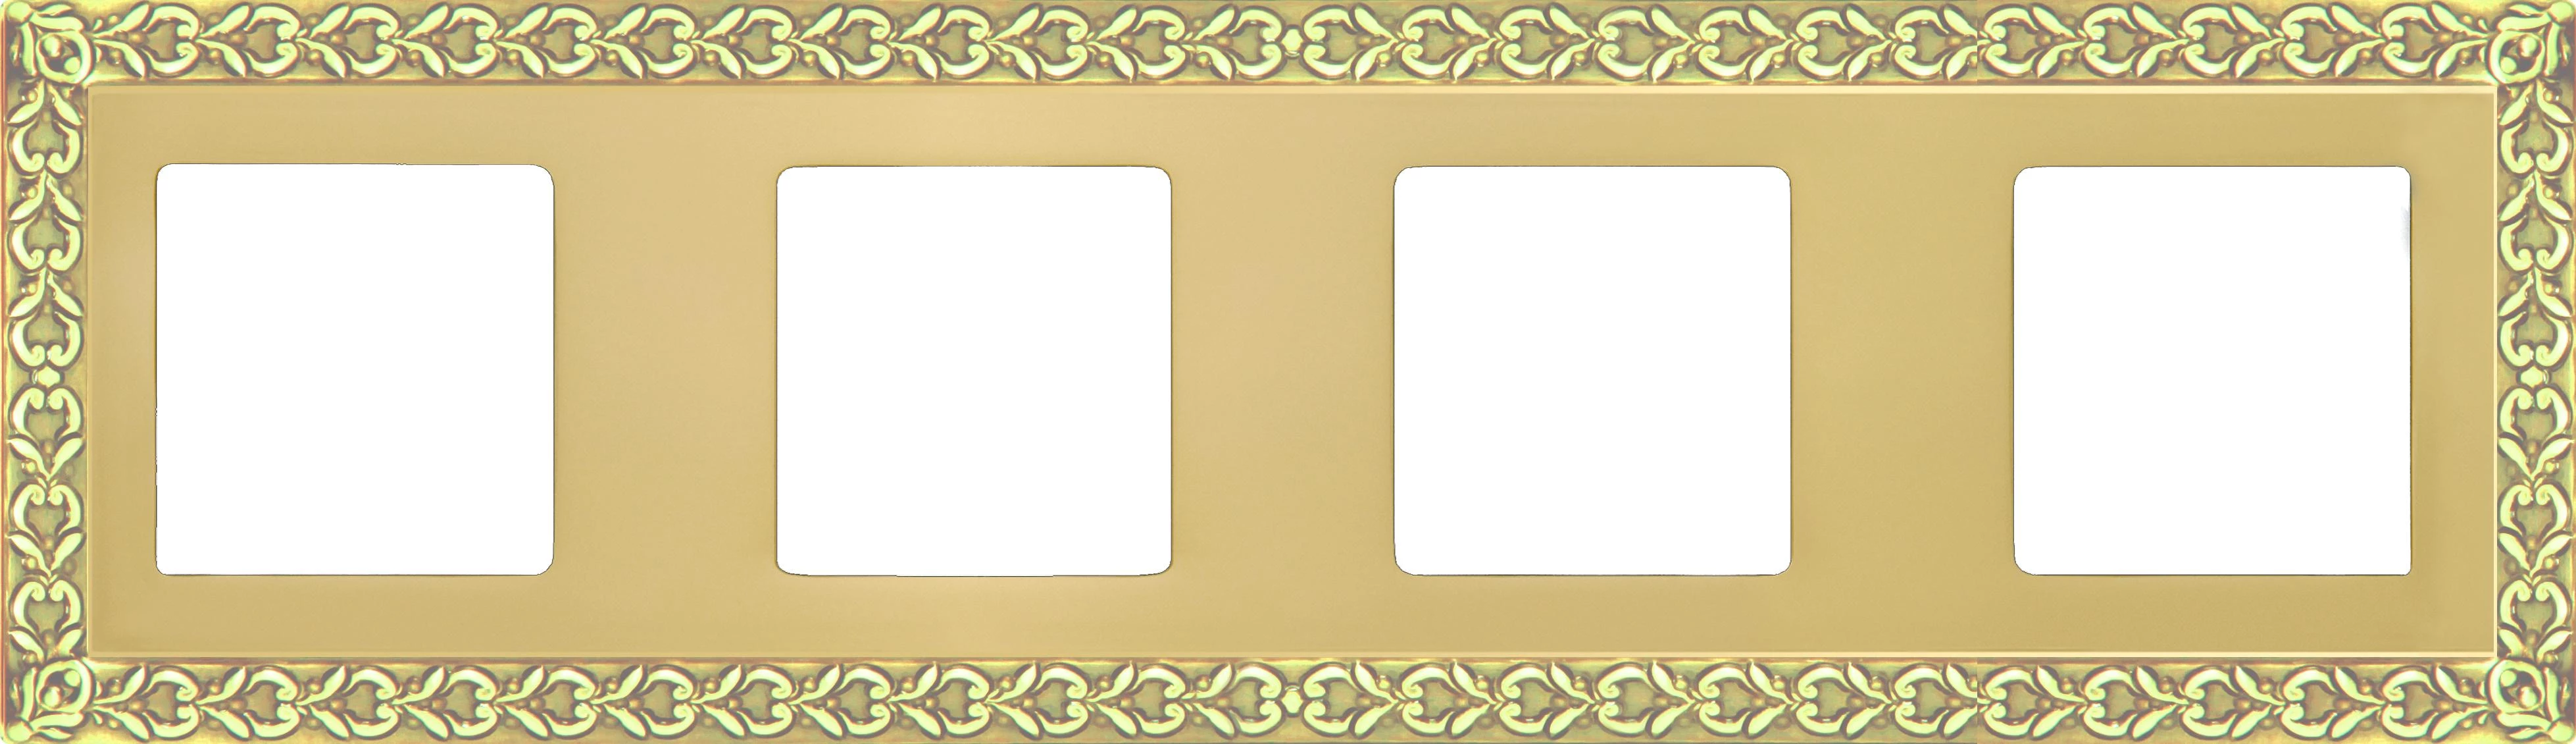  артикул FD01224OB название Рамка 4-ая (четверная), цвет Светлое золото, San Sebastian, Fede